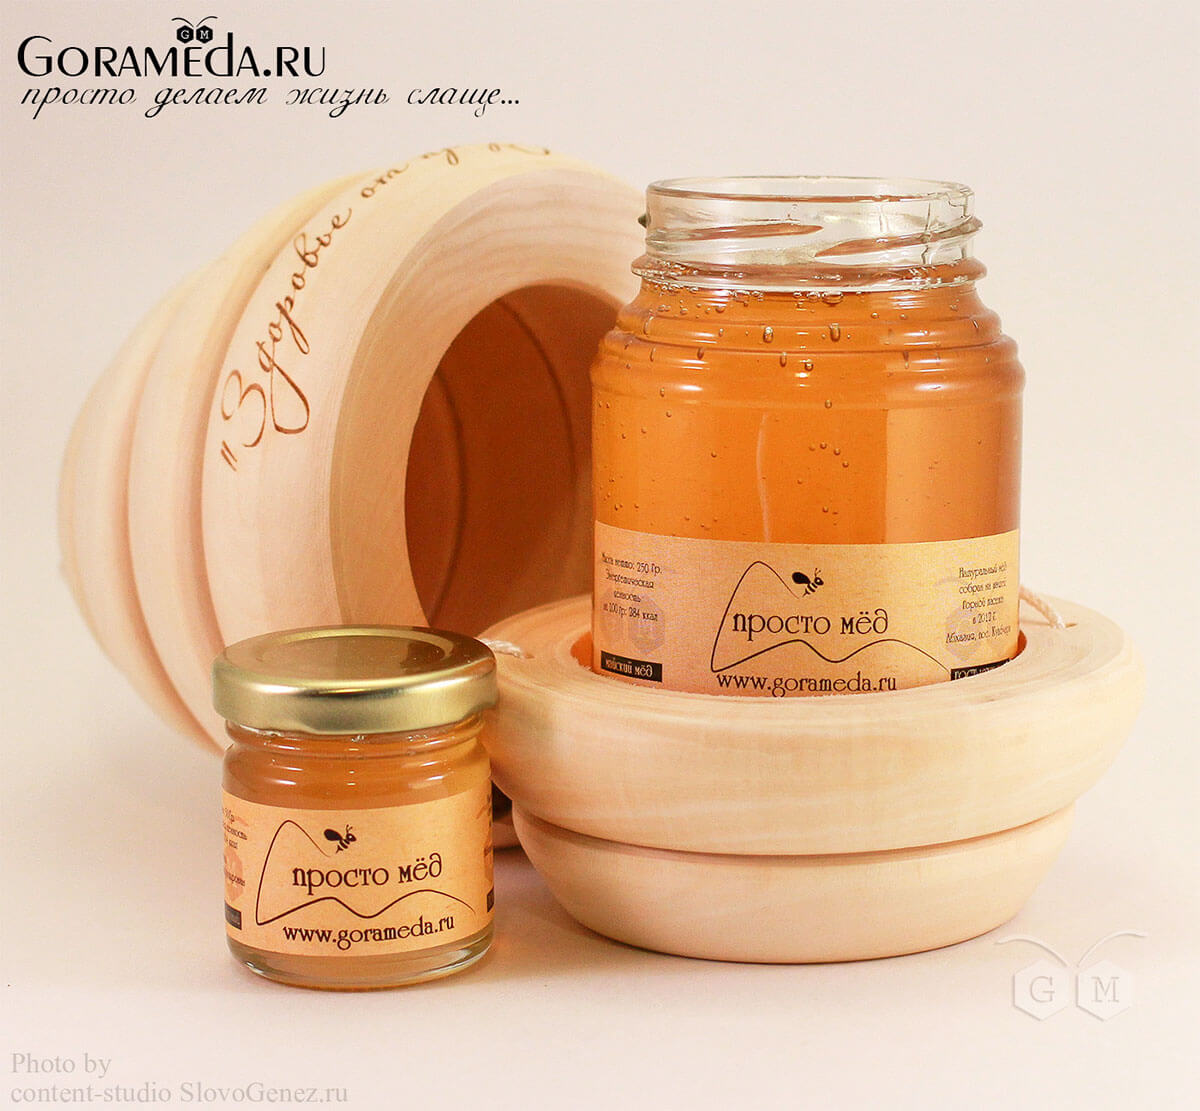 мёд в деревянном бочонке от gorameda.ru